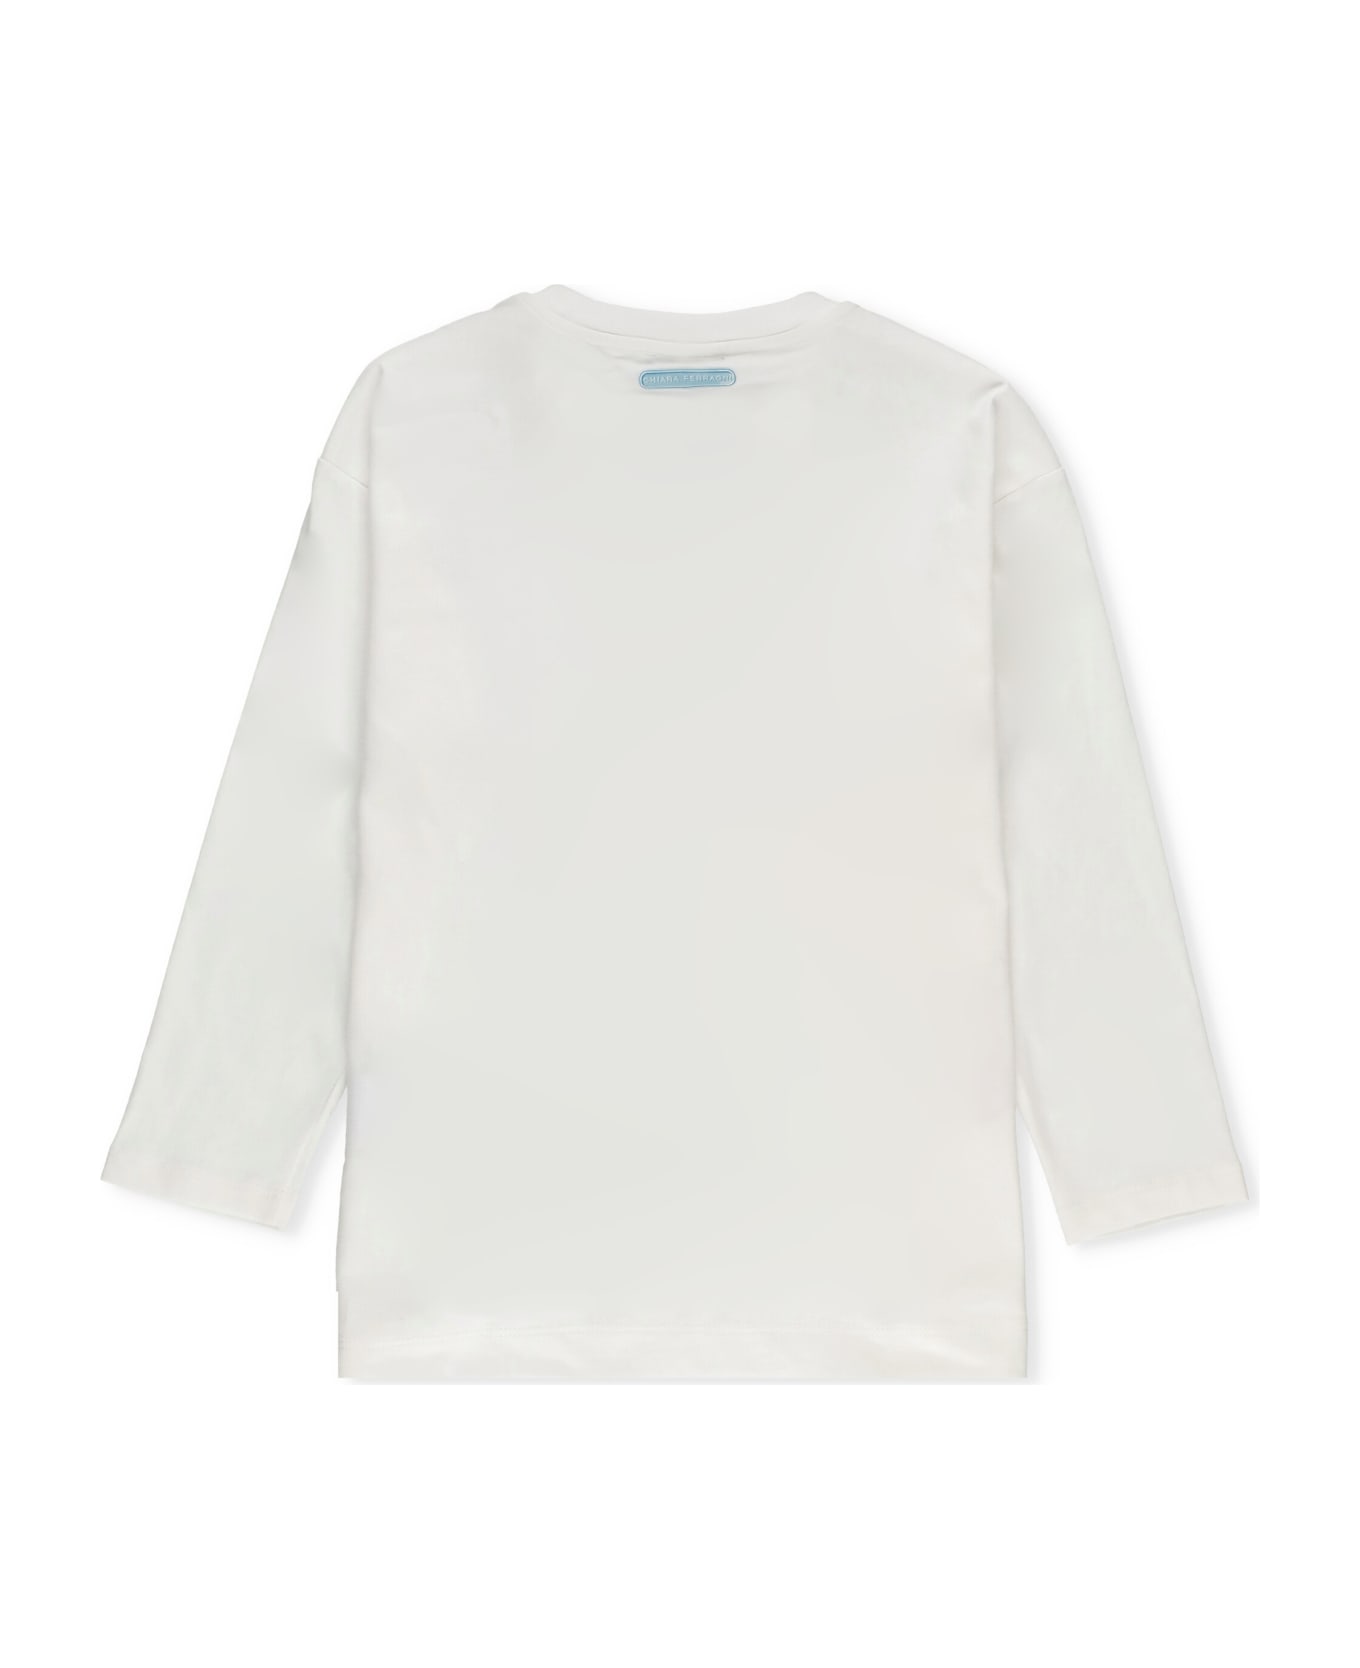 Chiara Ferragni Cotton T-shirt - White